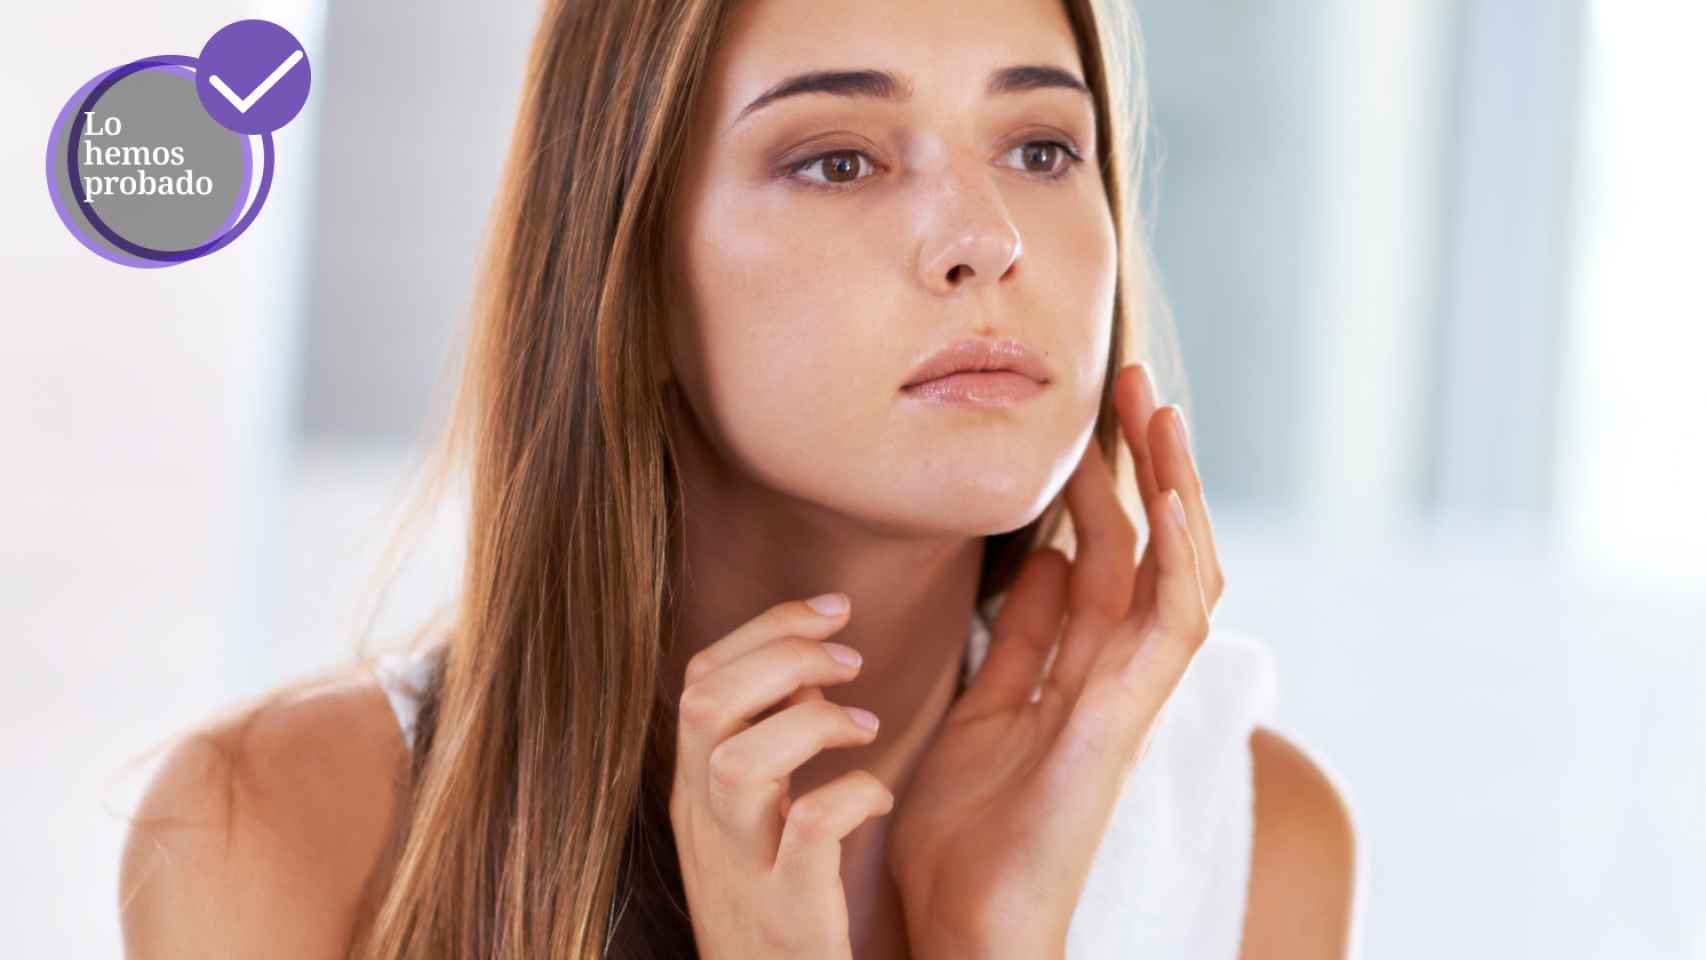 Lo hemos probado: Beauty Focus Collagen+, el suplemento para conseguir una piel increíble